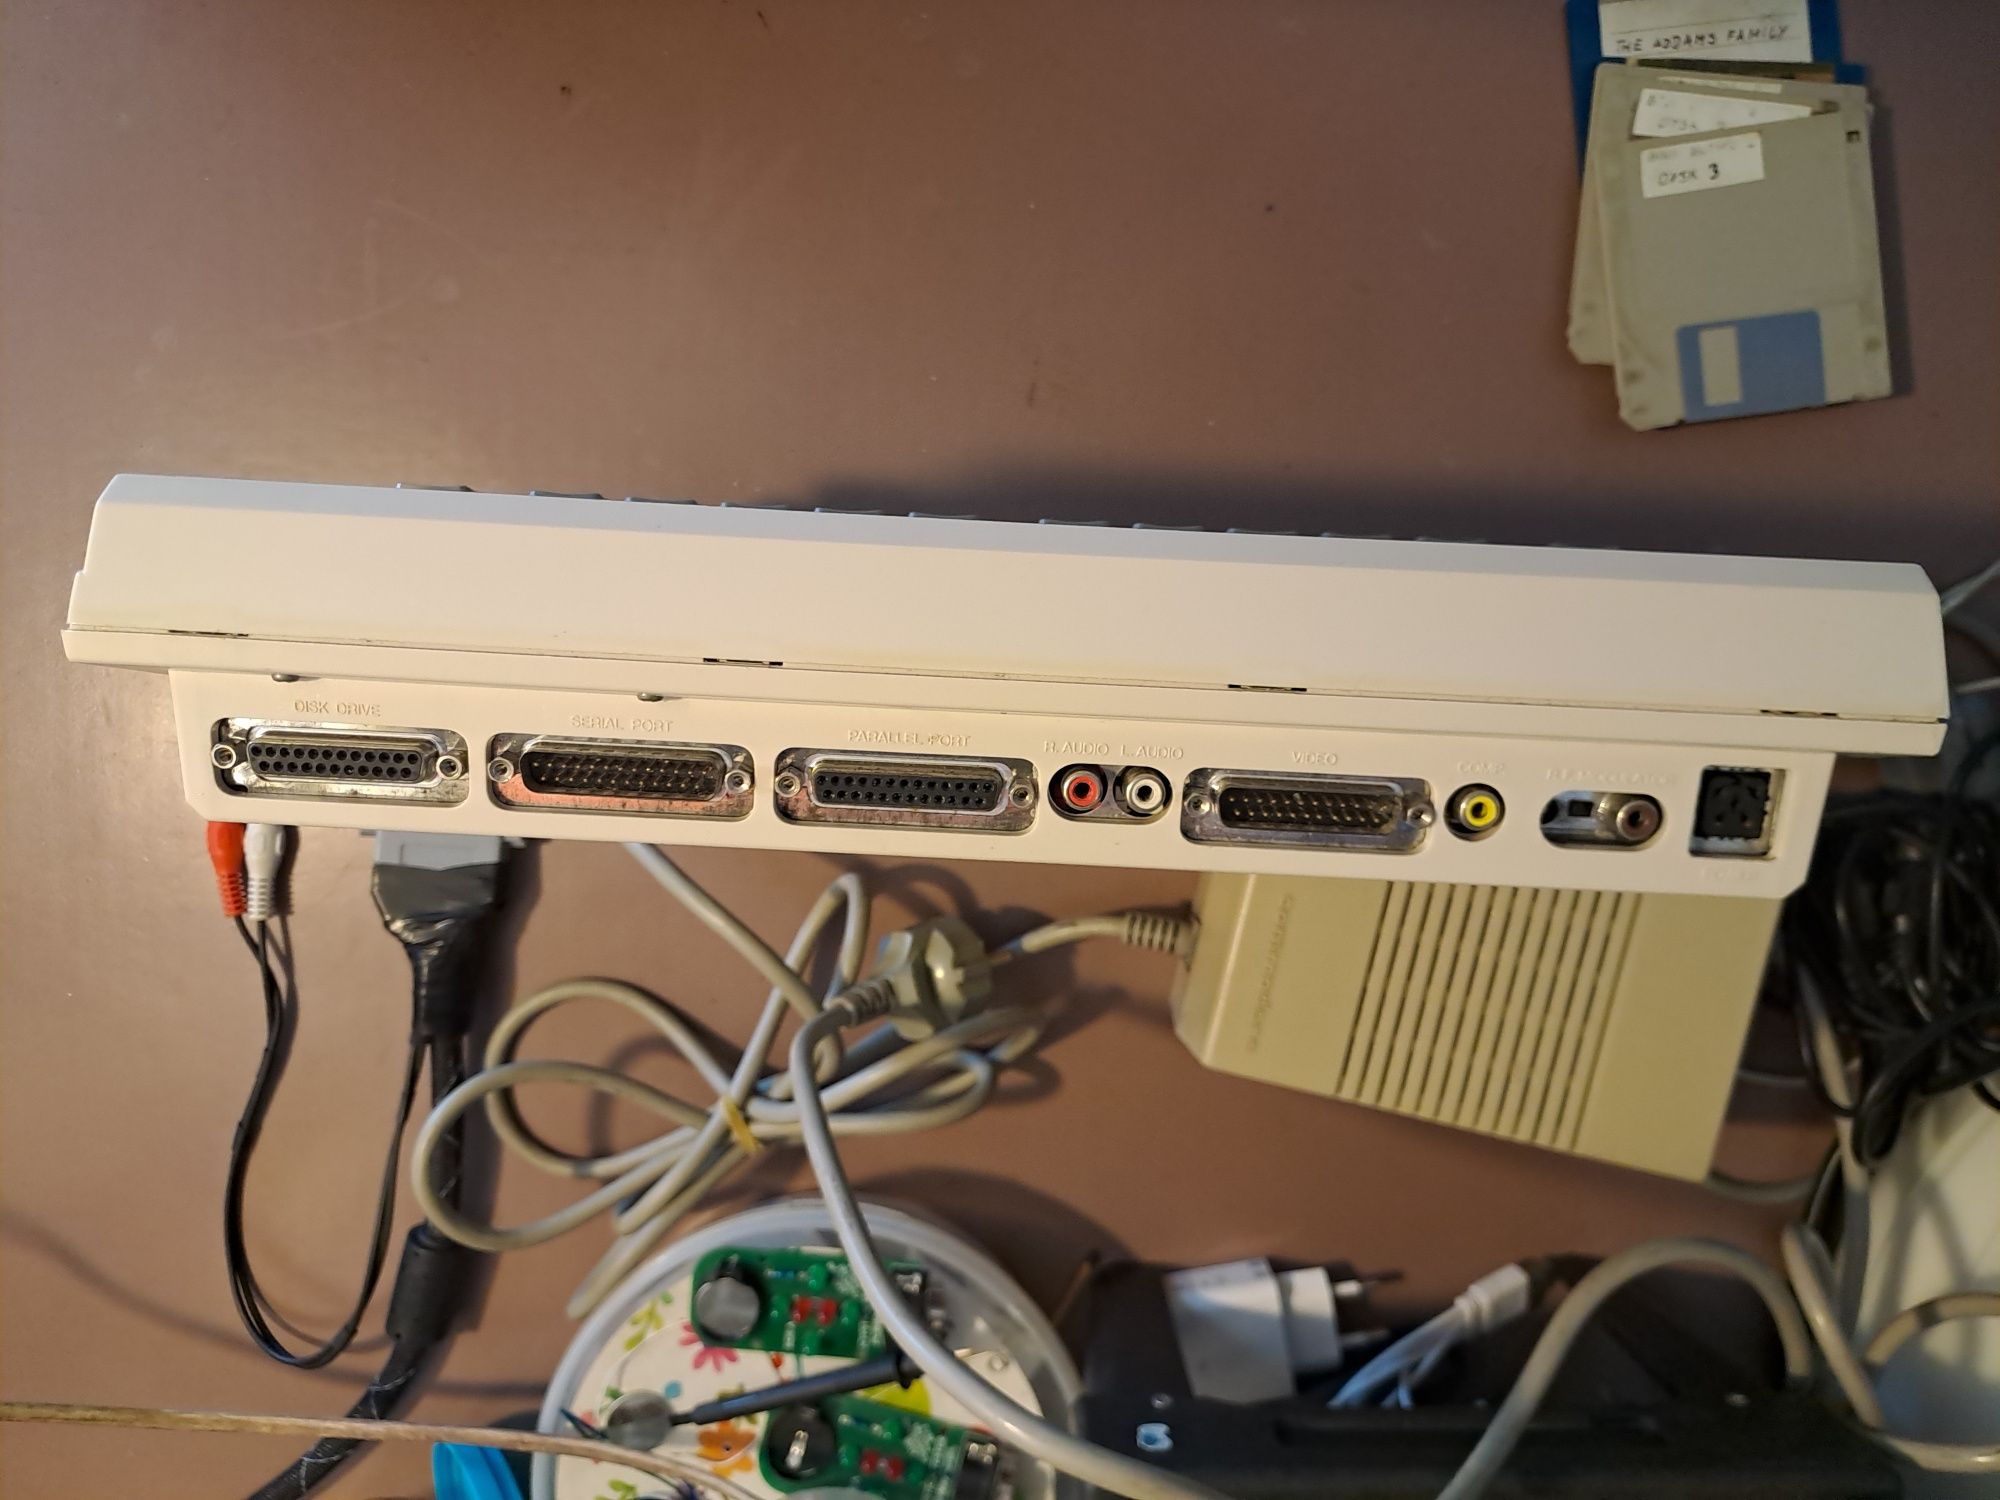 Amiga 600 A600 commodore